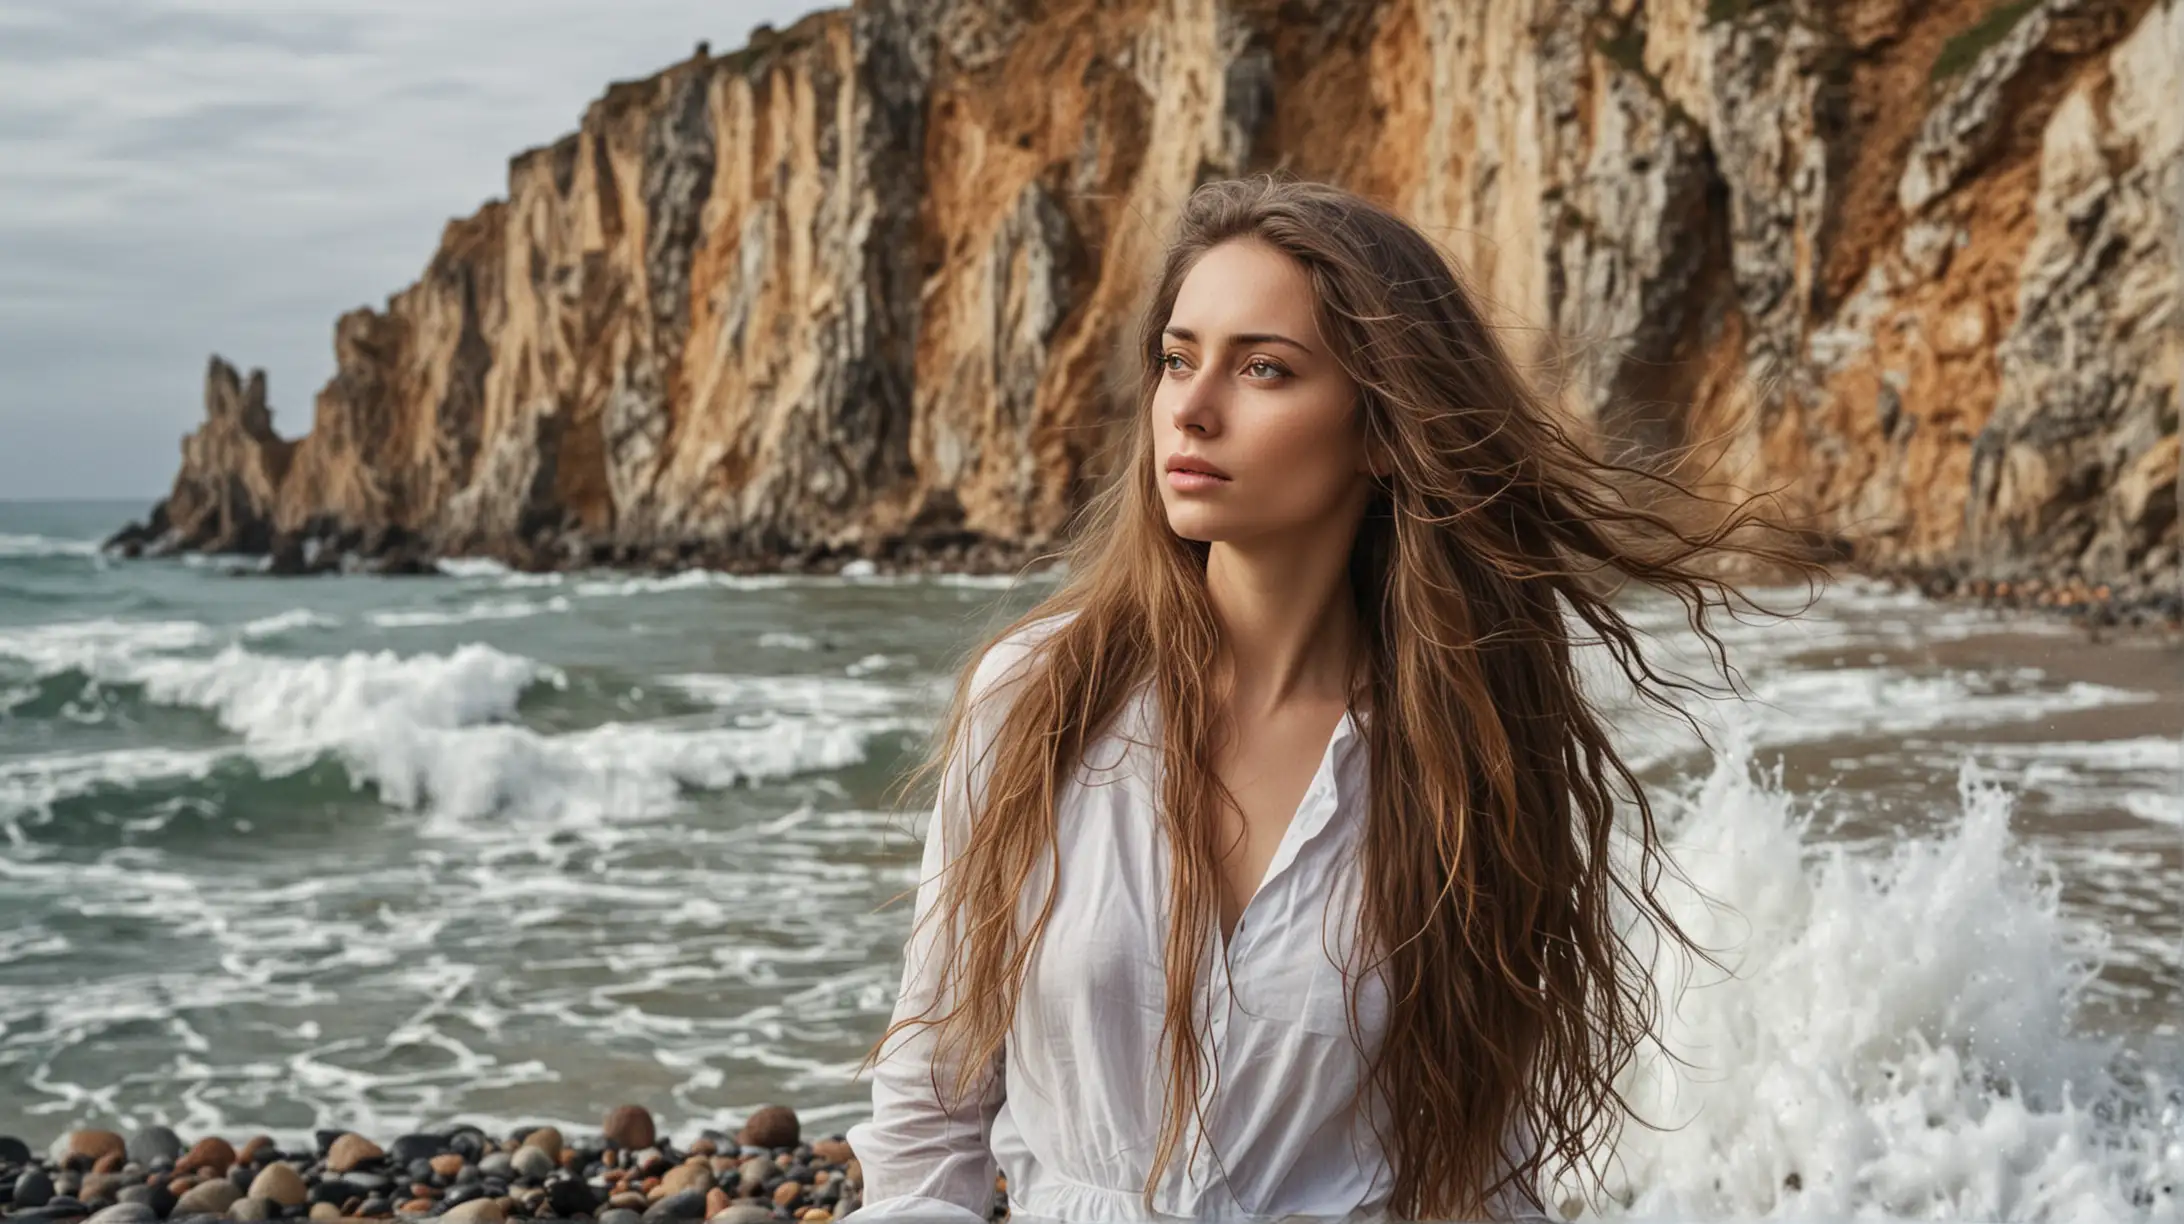 donna con capelli lunghi su una spiaggi con sassi e onde alte che si infrangono. La donna guarda il mare, il ritratto della donna è da un lato e lo sfondo ci sono scogli